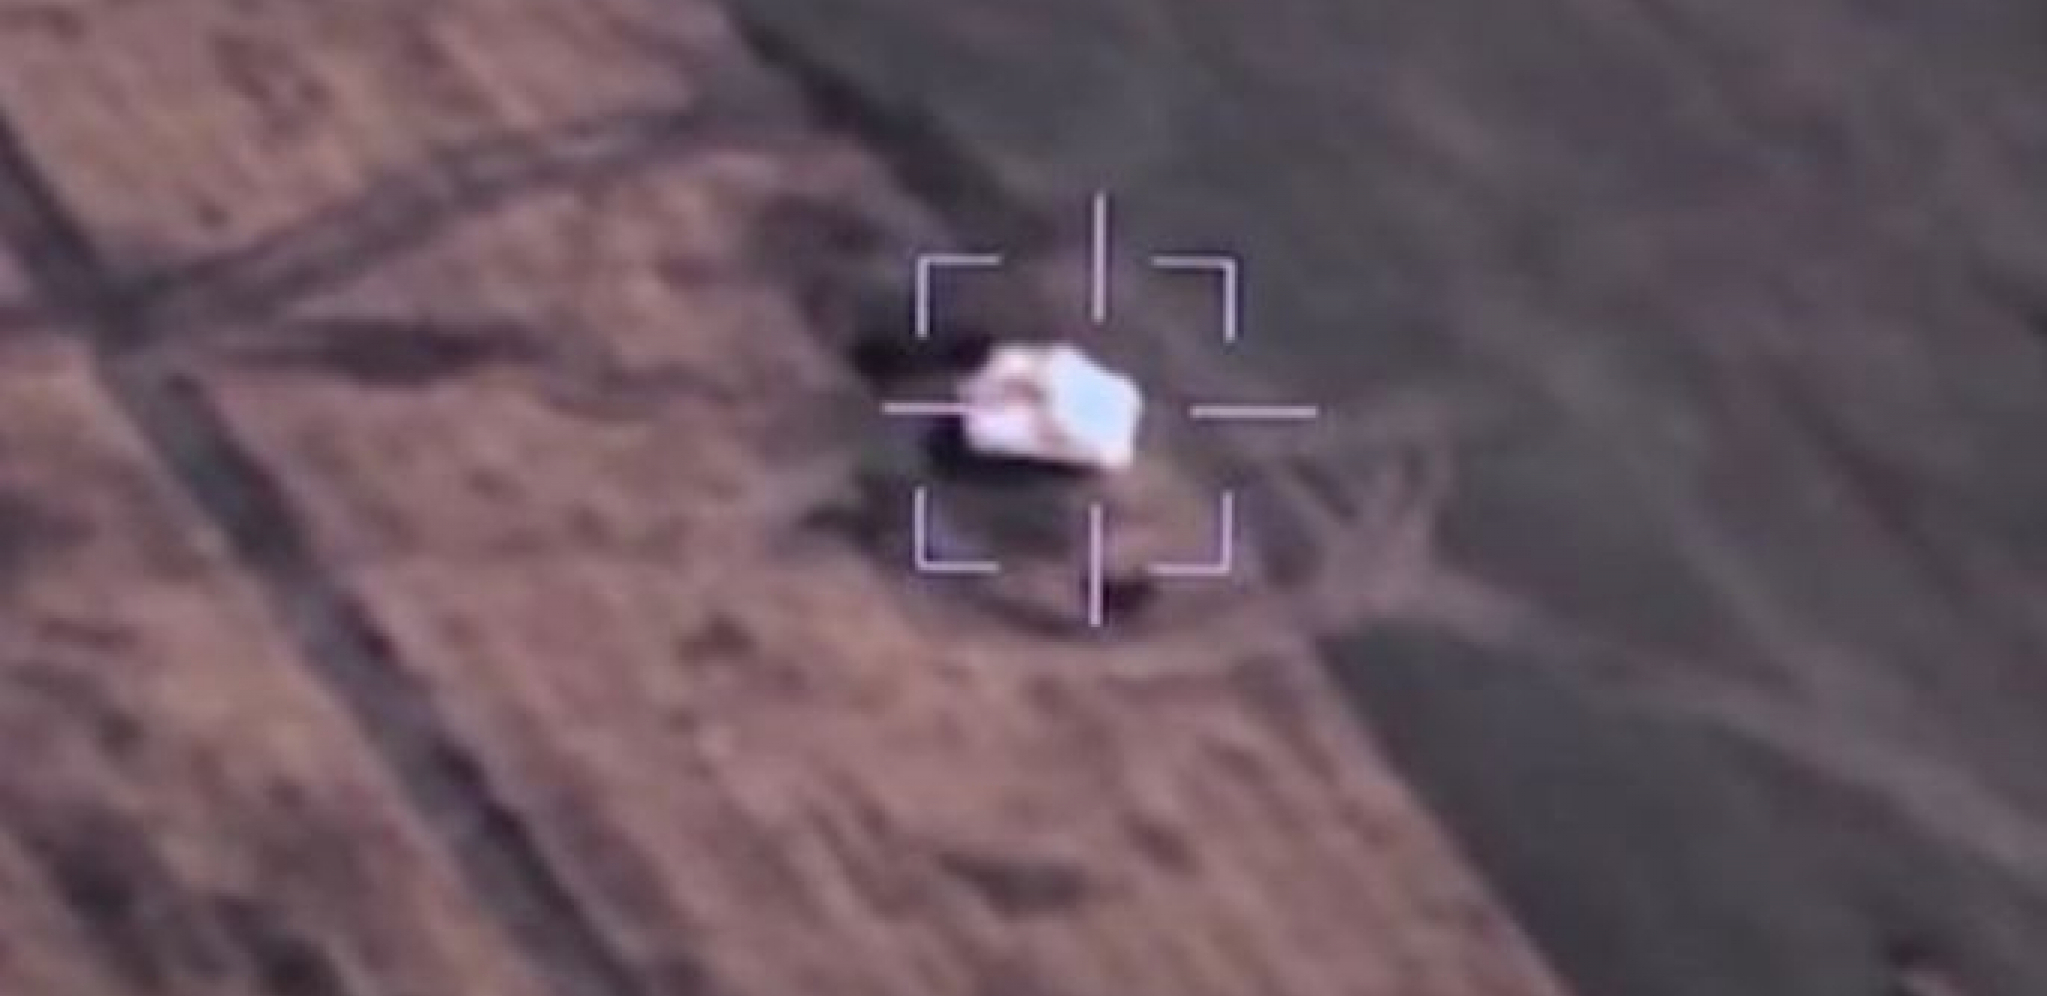 ČAK 15 ZEMALJA KORISTI SMRTONOSNO KINESKO ORUŽJE: "Cai Hong" ima i Srbija, pogledajte šta CH-92A sve ume (VIDEO)